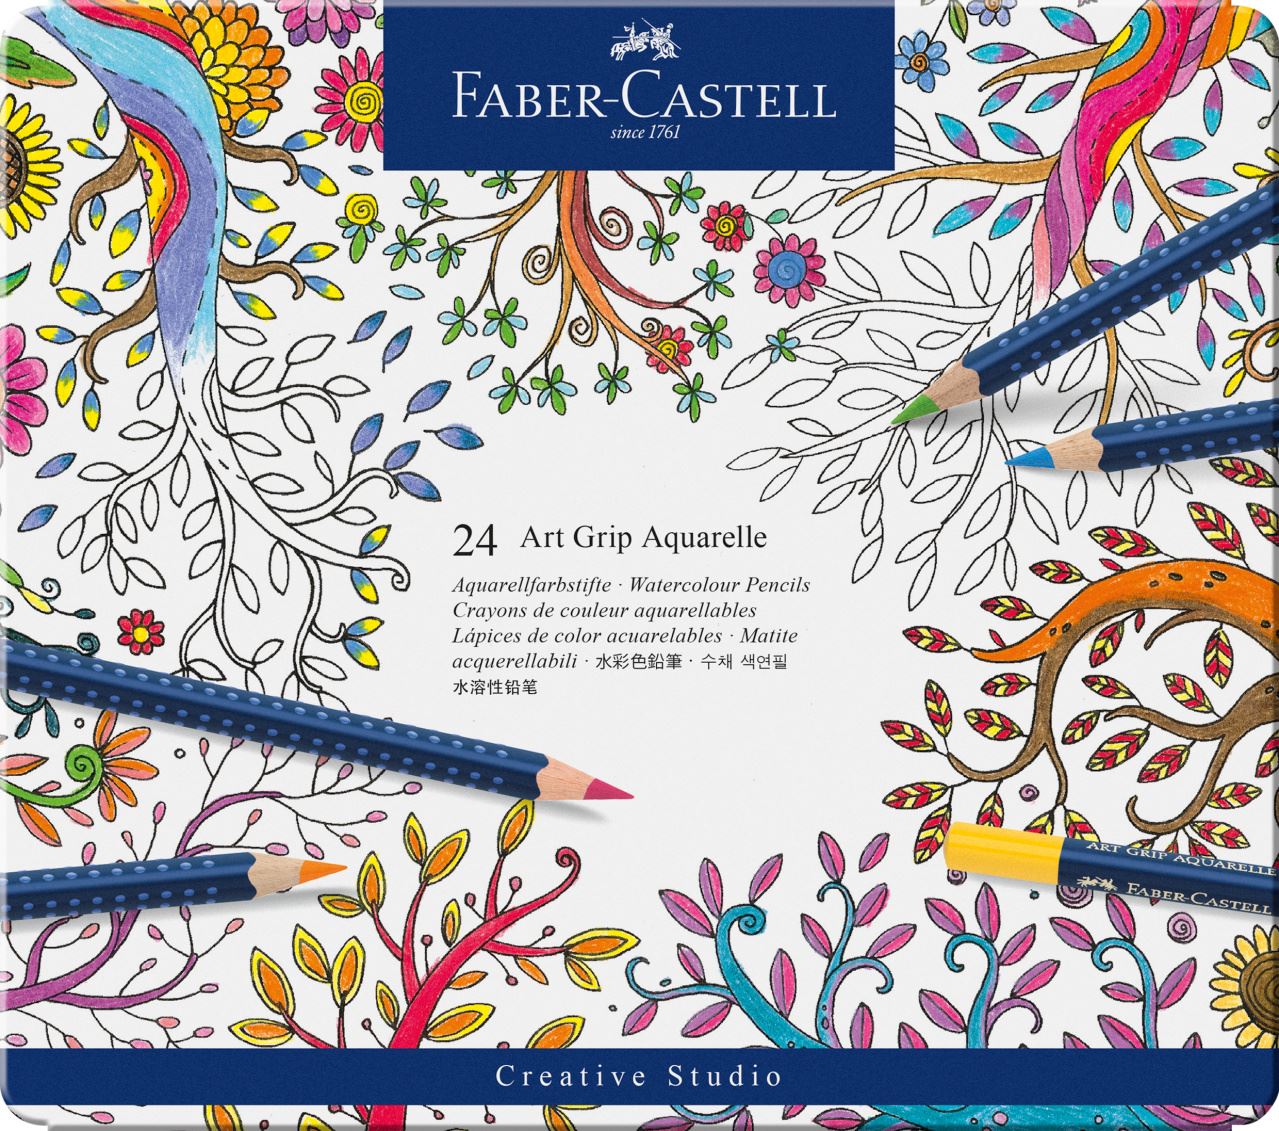 Faber-Castell - Lápiz de color Art Grip Aquarelle estuche x24